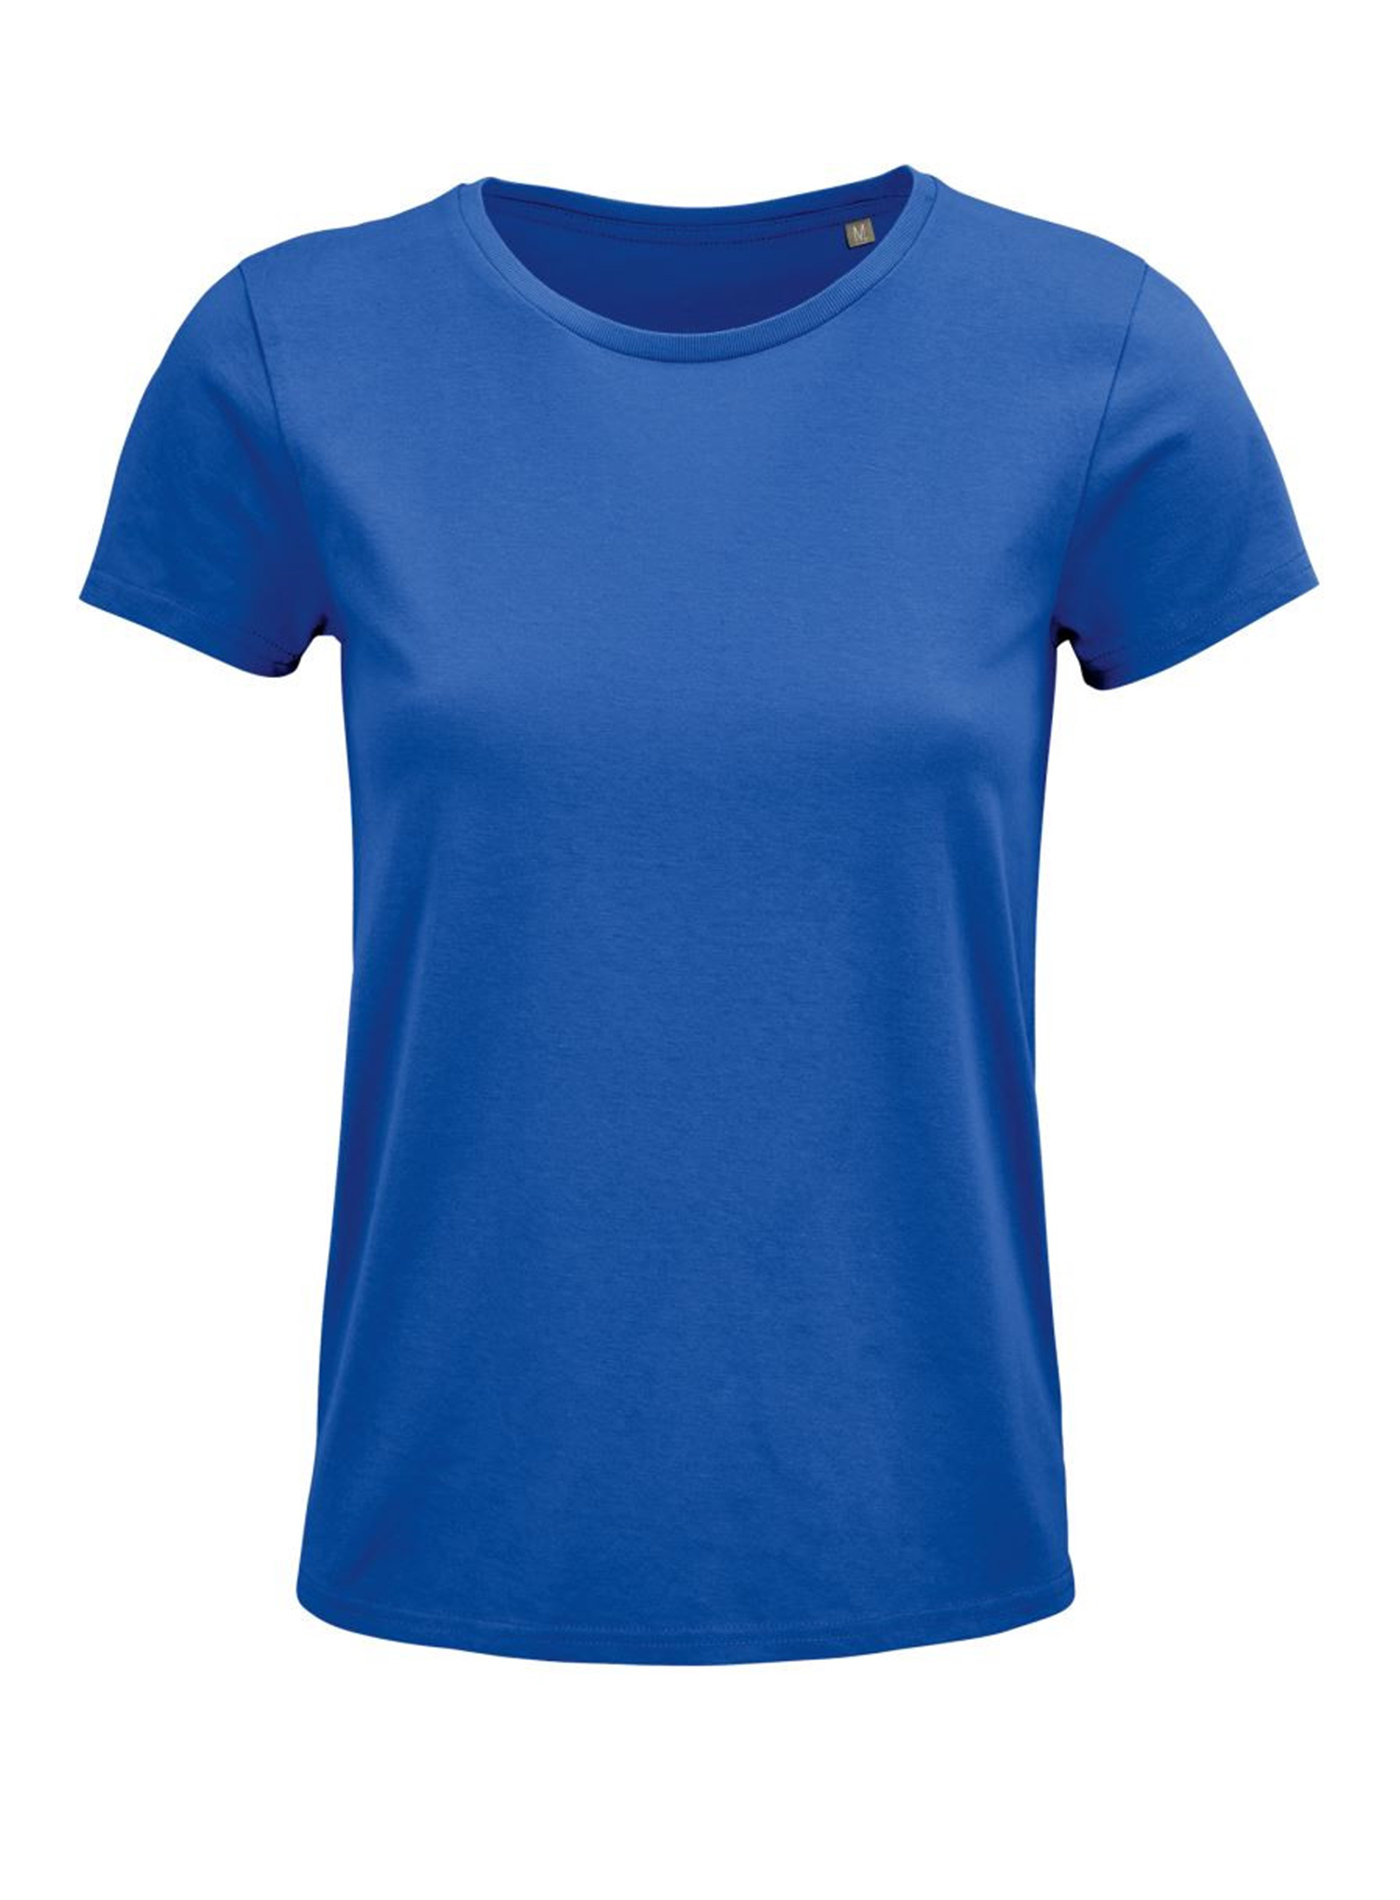 Dámské tričko SOL'S Crusader - královská modrá L